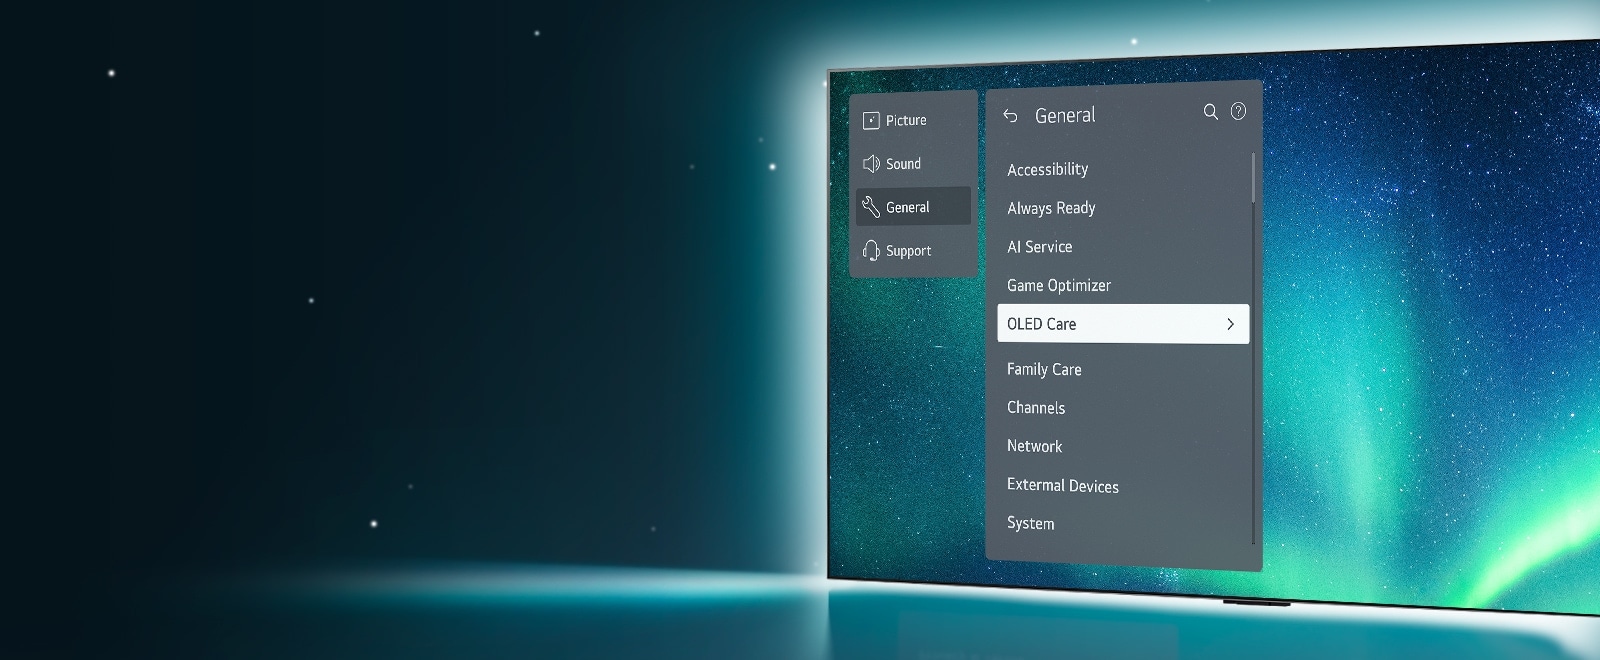 OLED TV nằm ở phía bên phải của hình ảnh. Menu Hỗ trợ hiển thị trên màn hình và menu OLED Care được chọn.